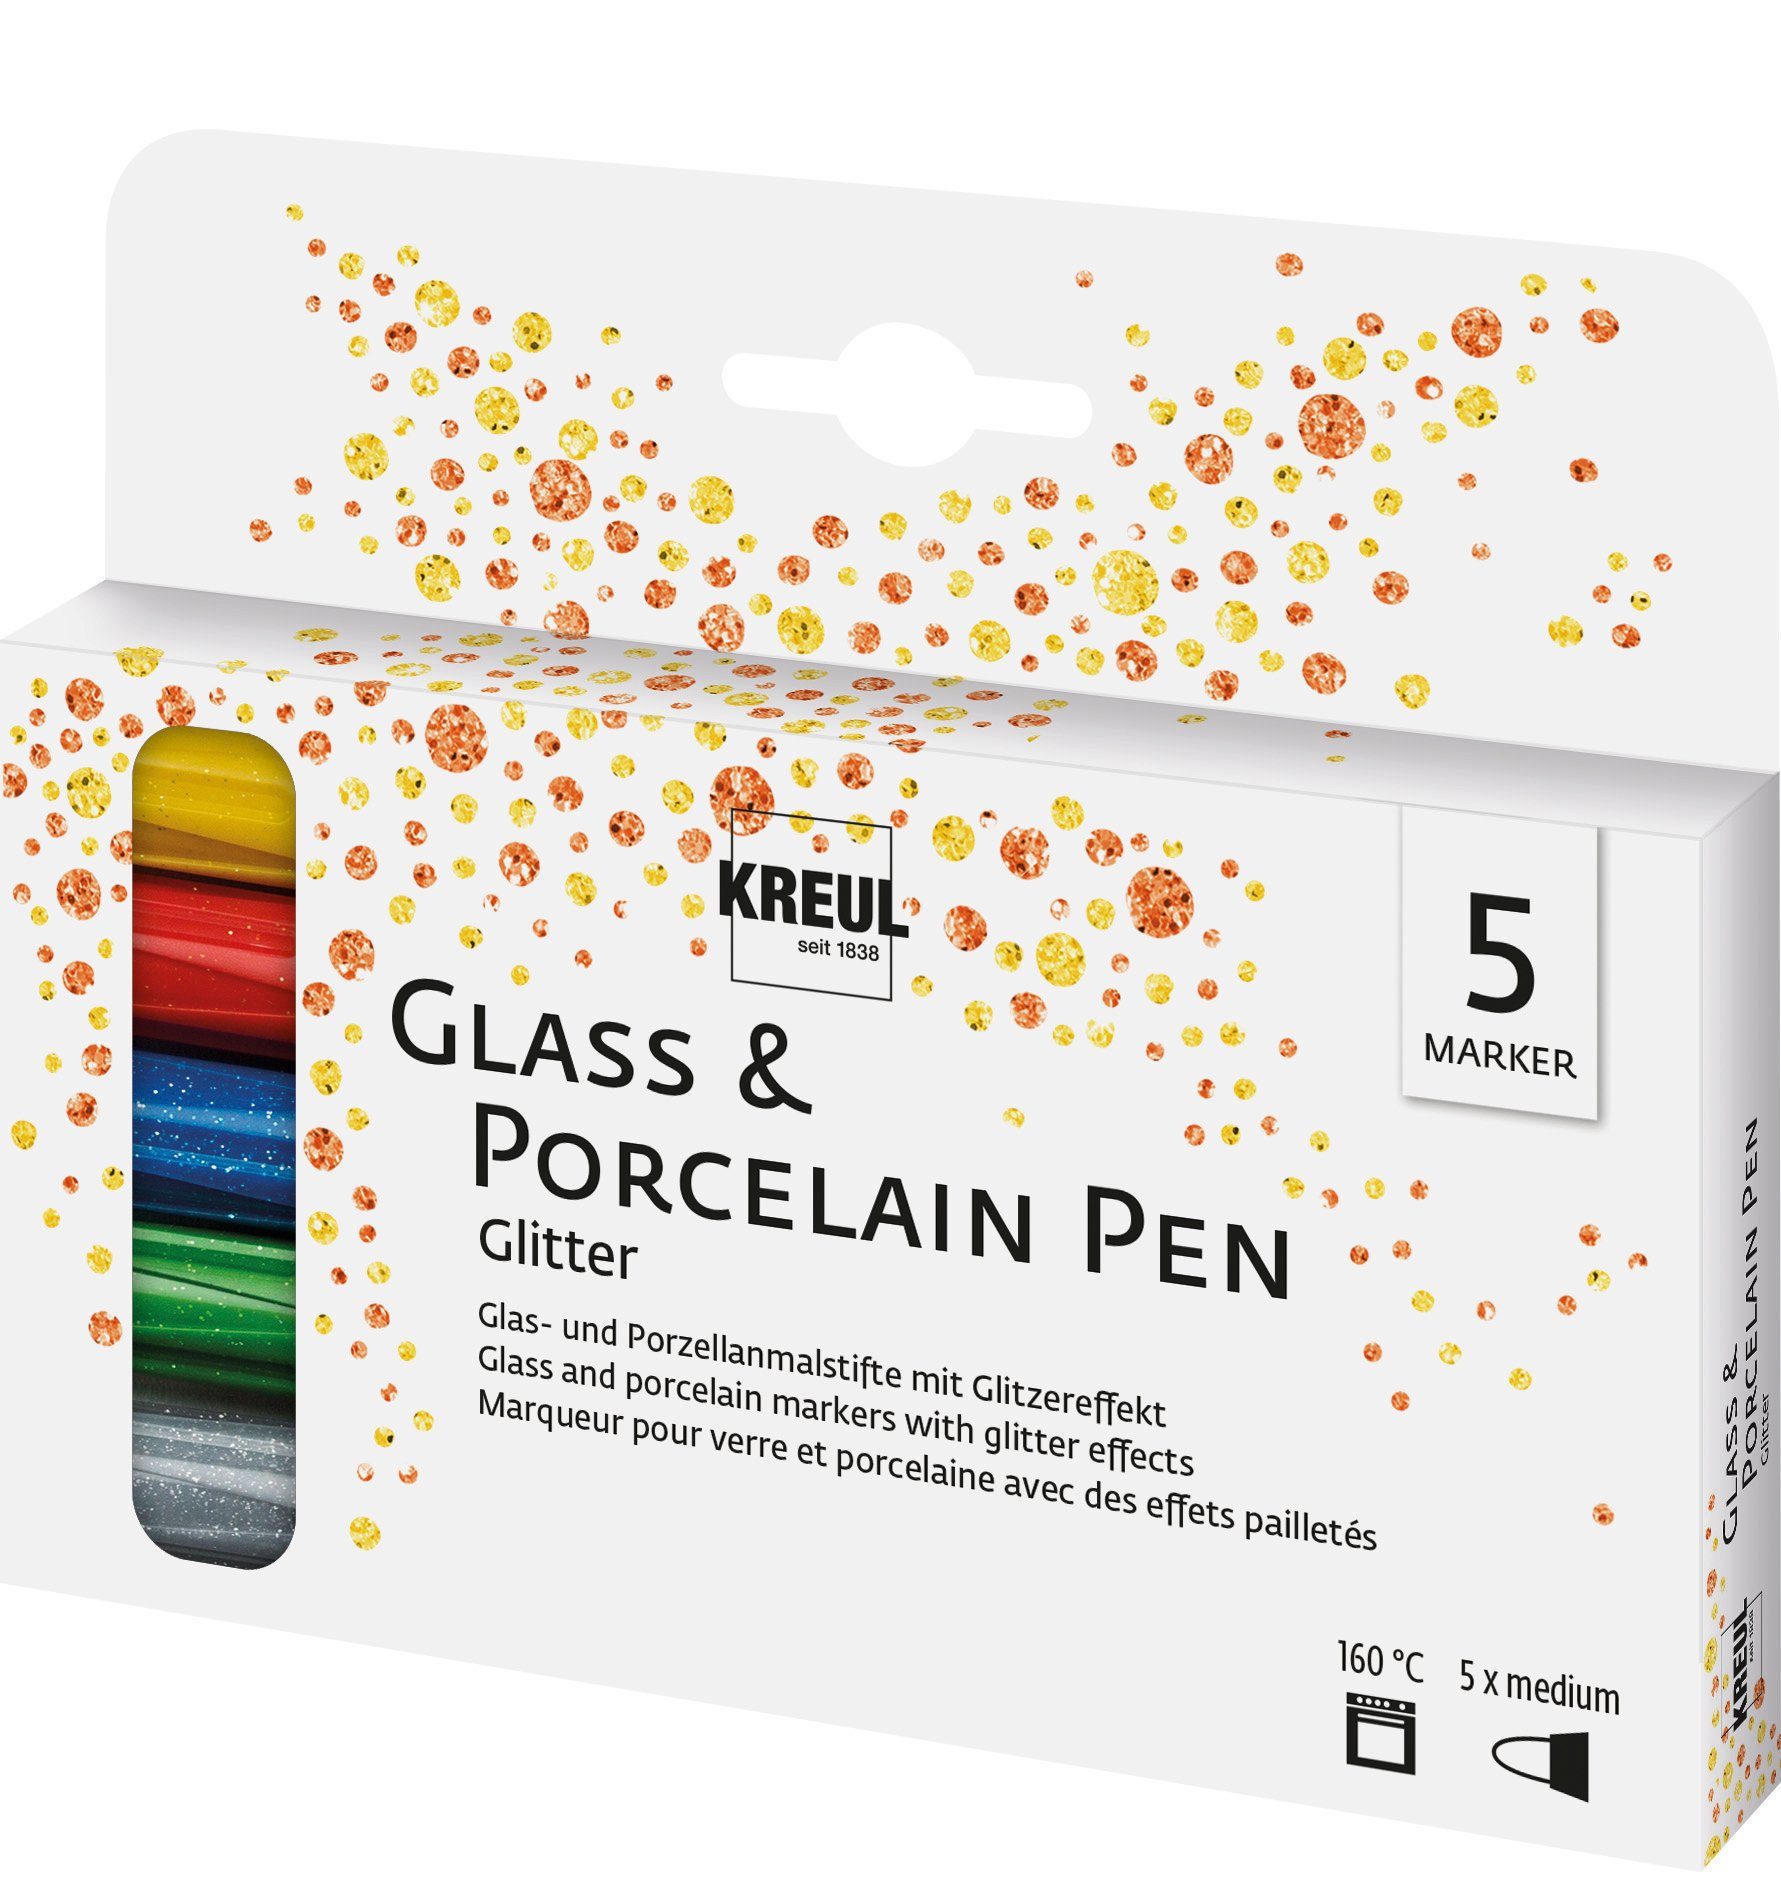 & Glass & Lackmarker Glasmalstift 5er-Set -, Kreul Porzellan- Pen Porcelain